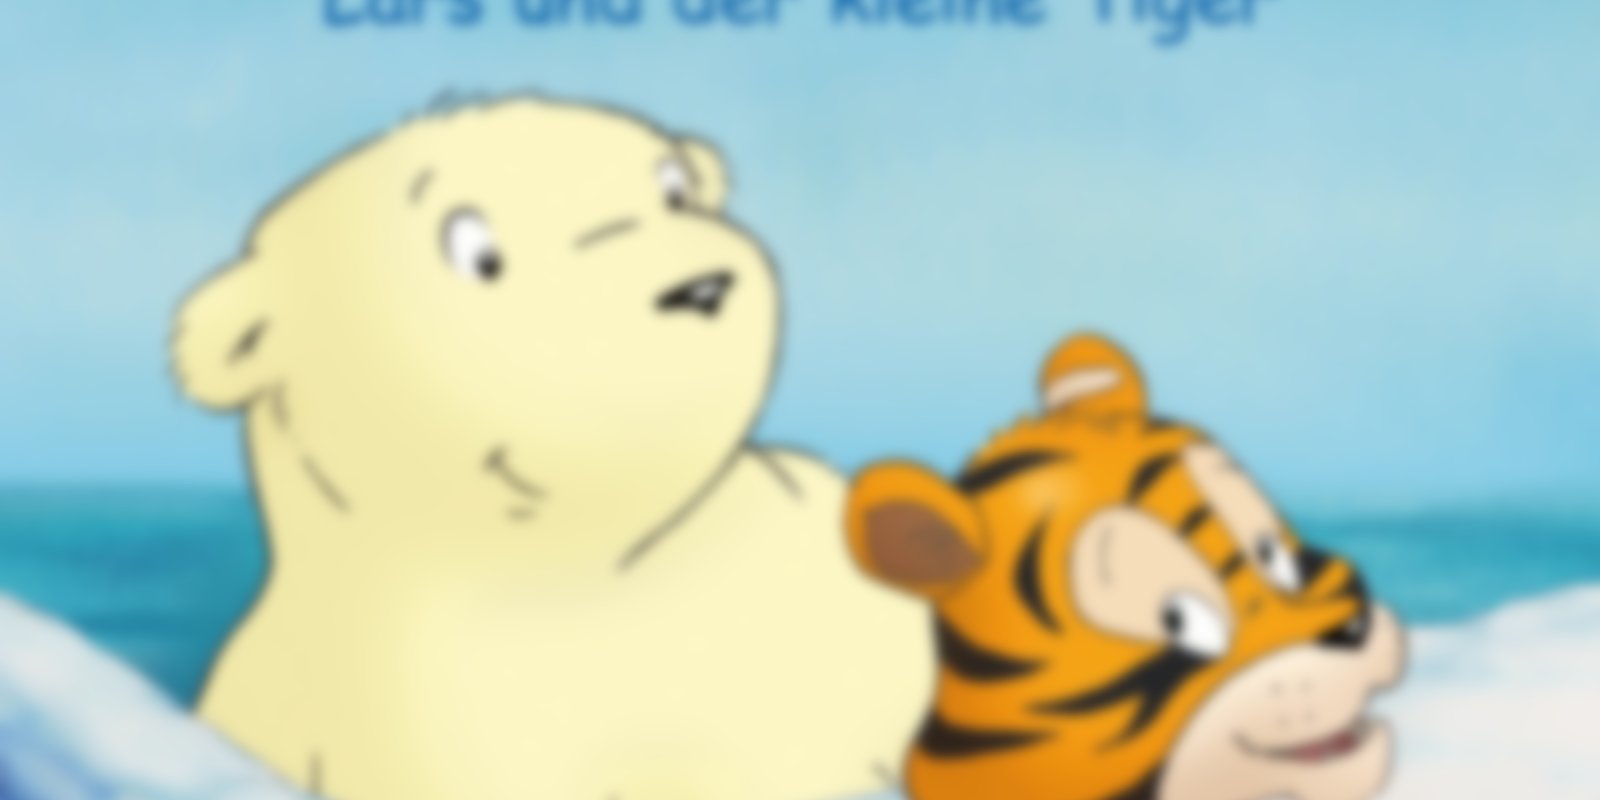 Der kleine Eisbär - Lars und der kleine Tiger